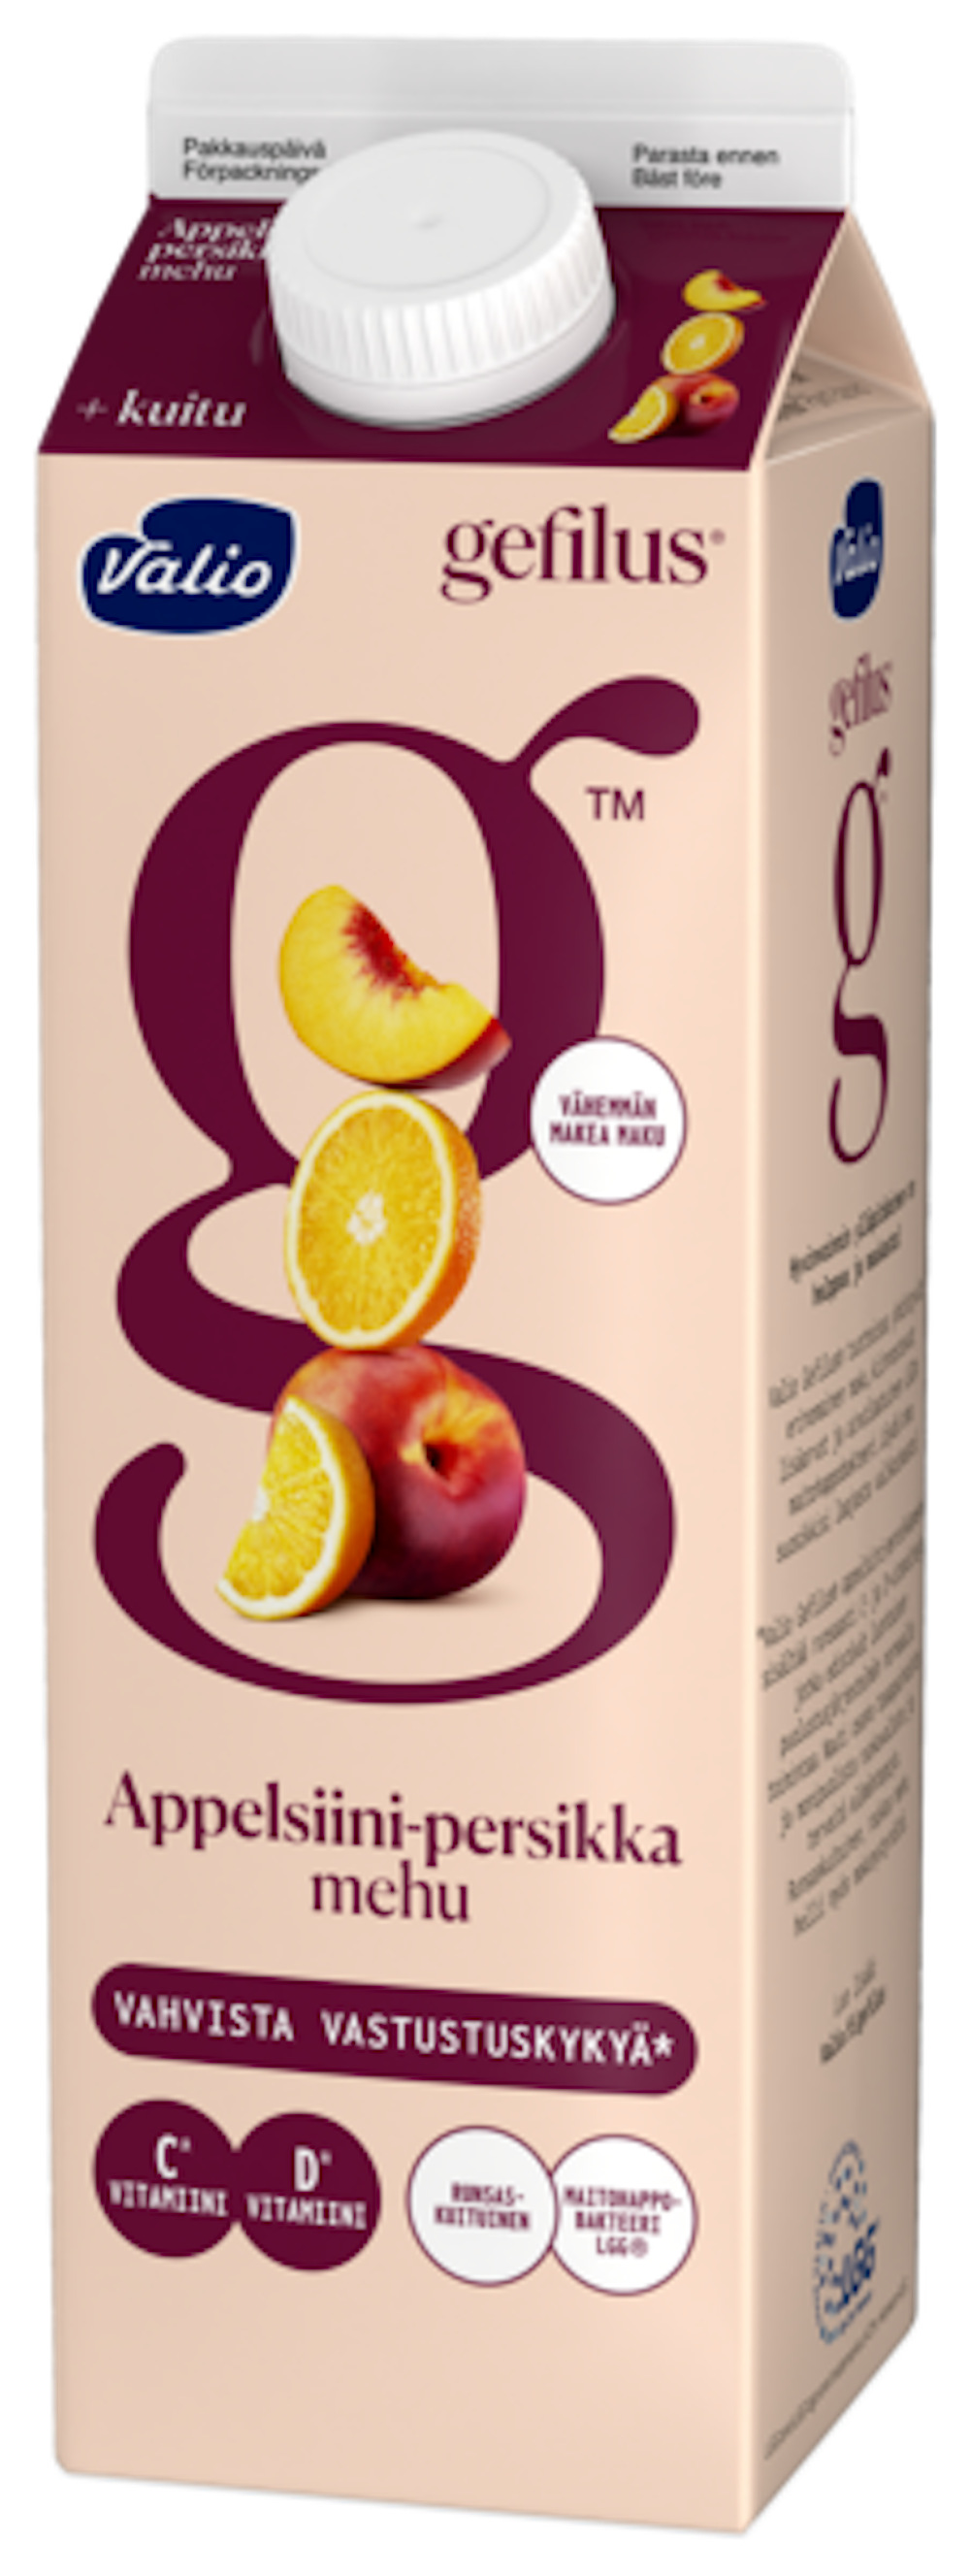 Valio Gefilus® mehu 1 l appelsiini-persikka+kuitu — HoReCa-tukku Kespro